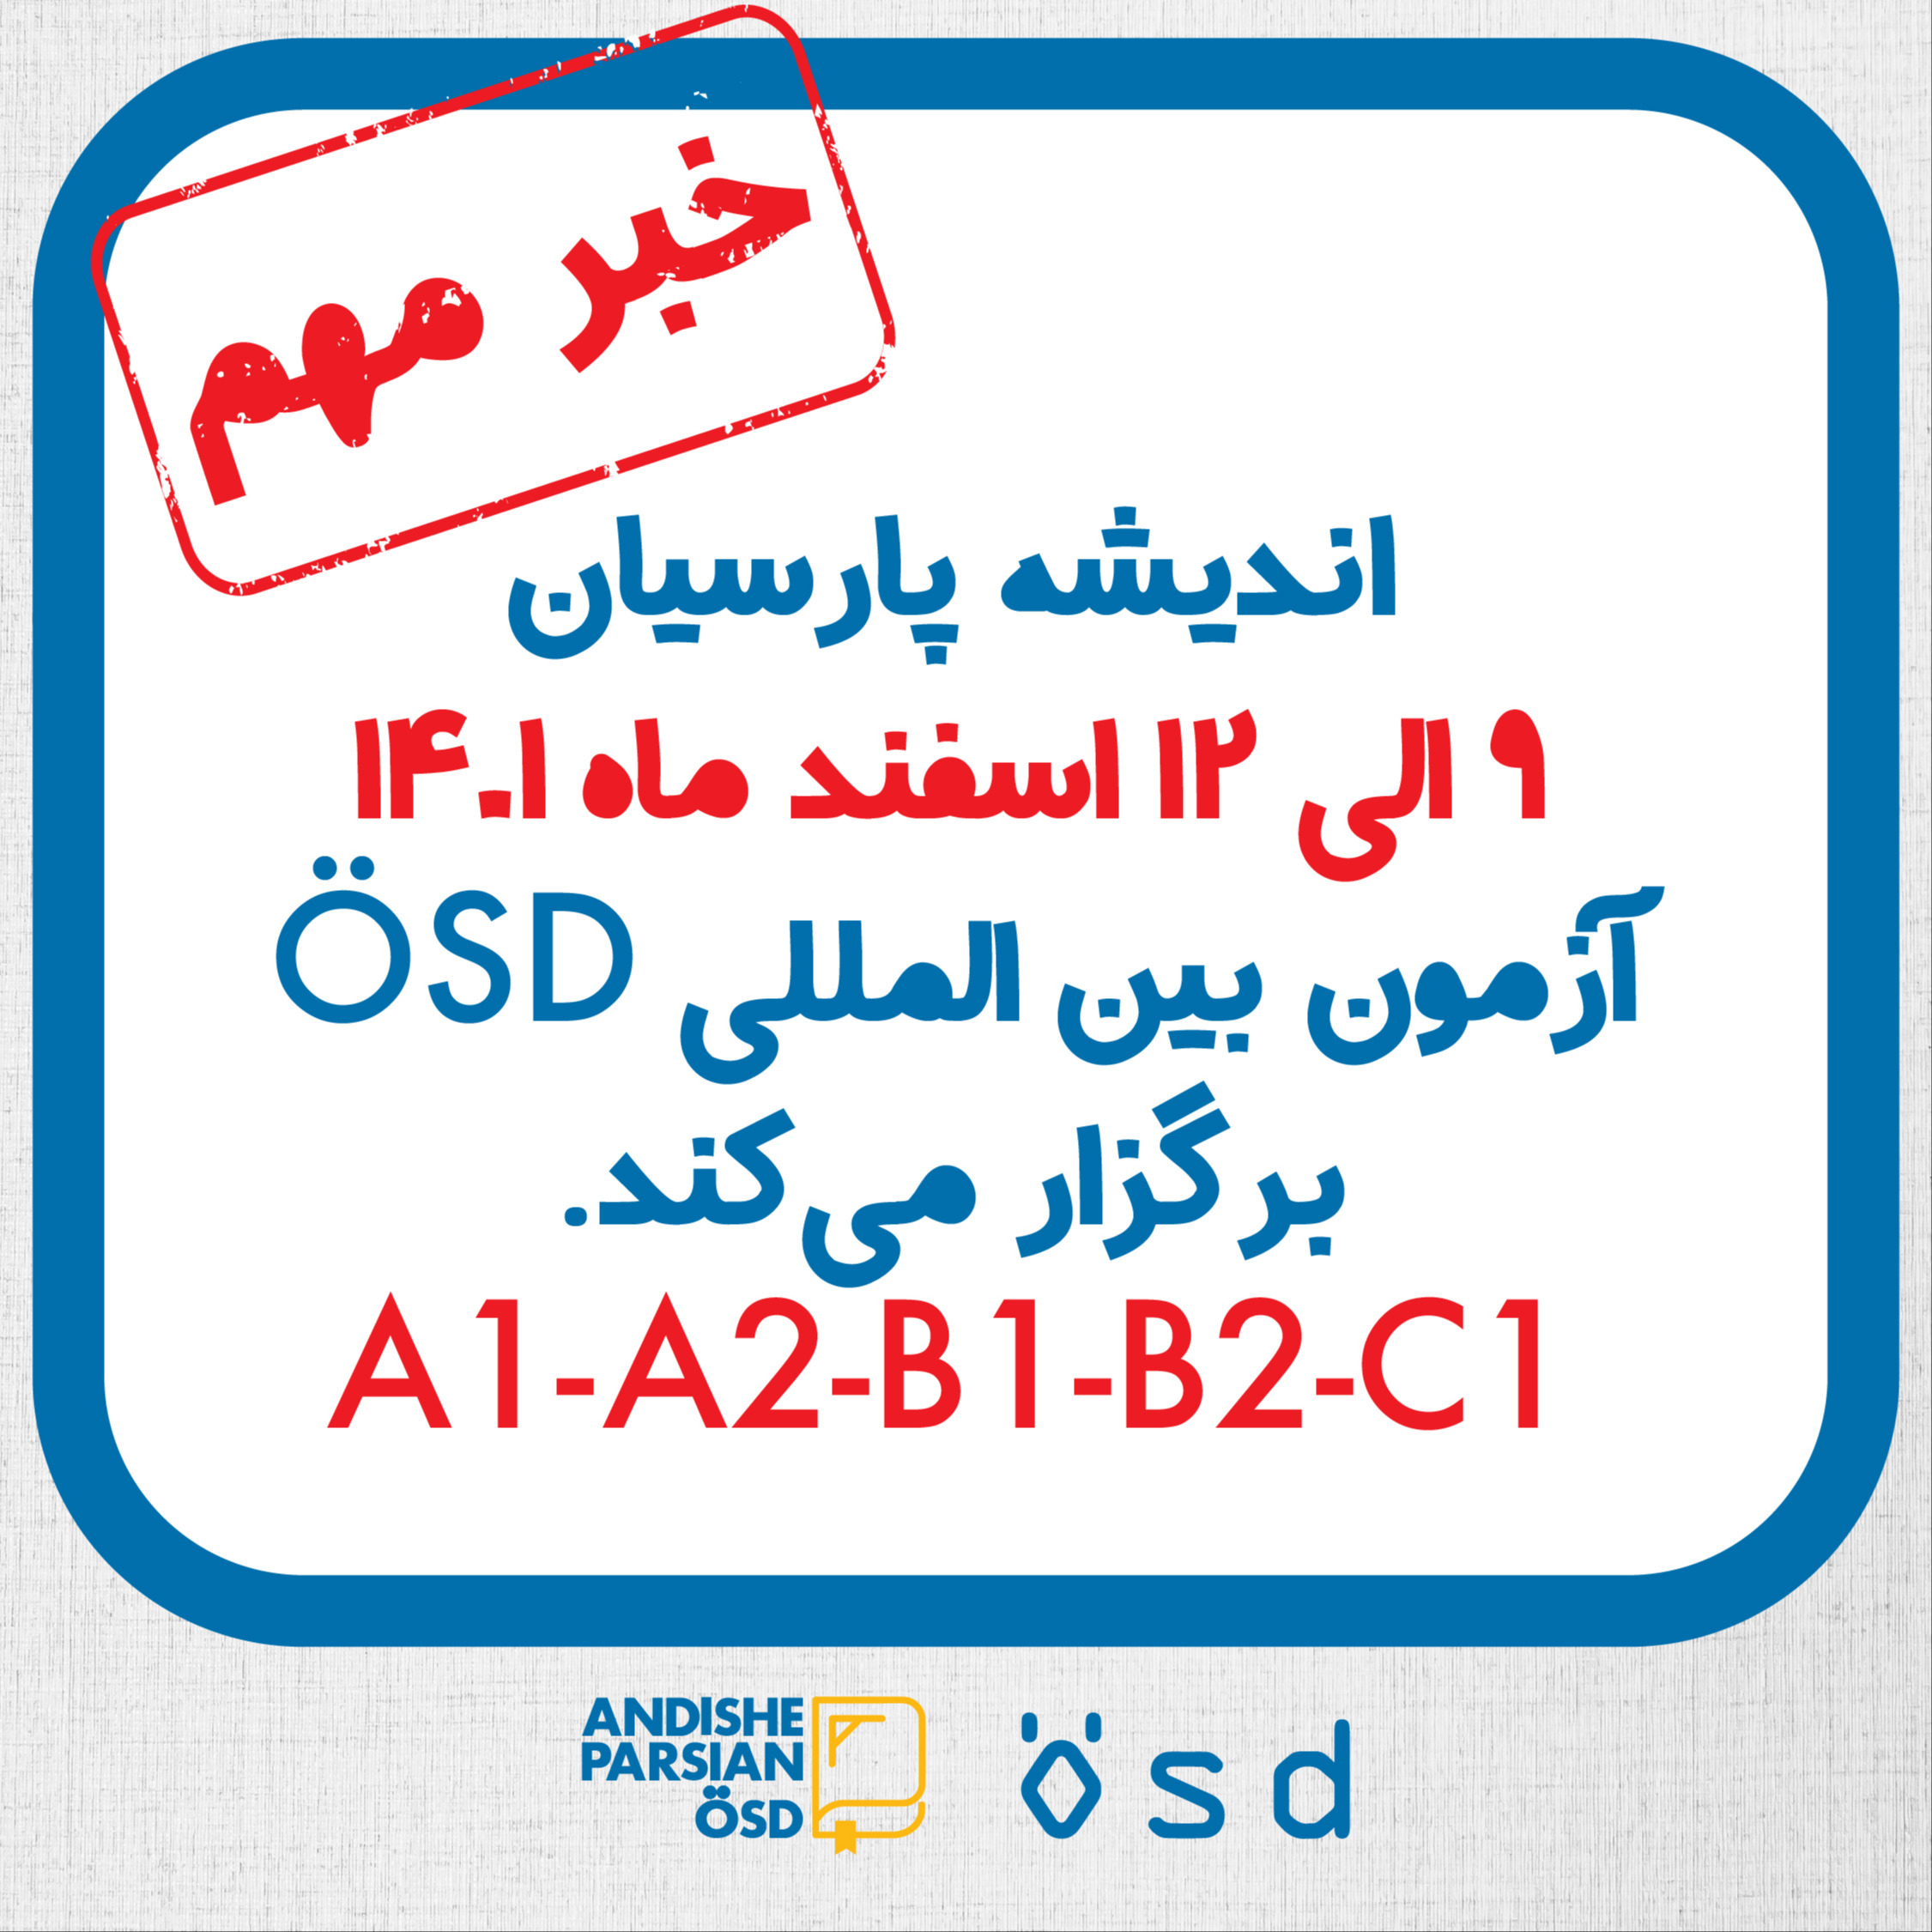 برگزاری آزمون ÖSD دراسفند ماه ۱۴۰۱ در اندیشه پارسیان